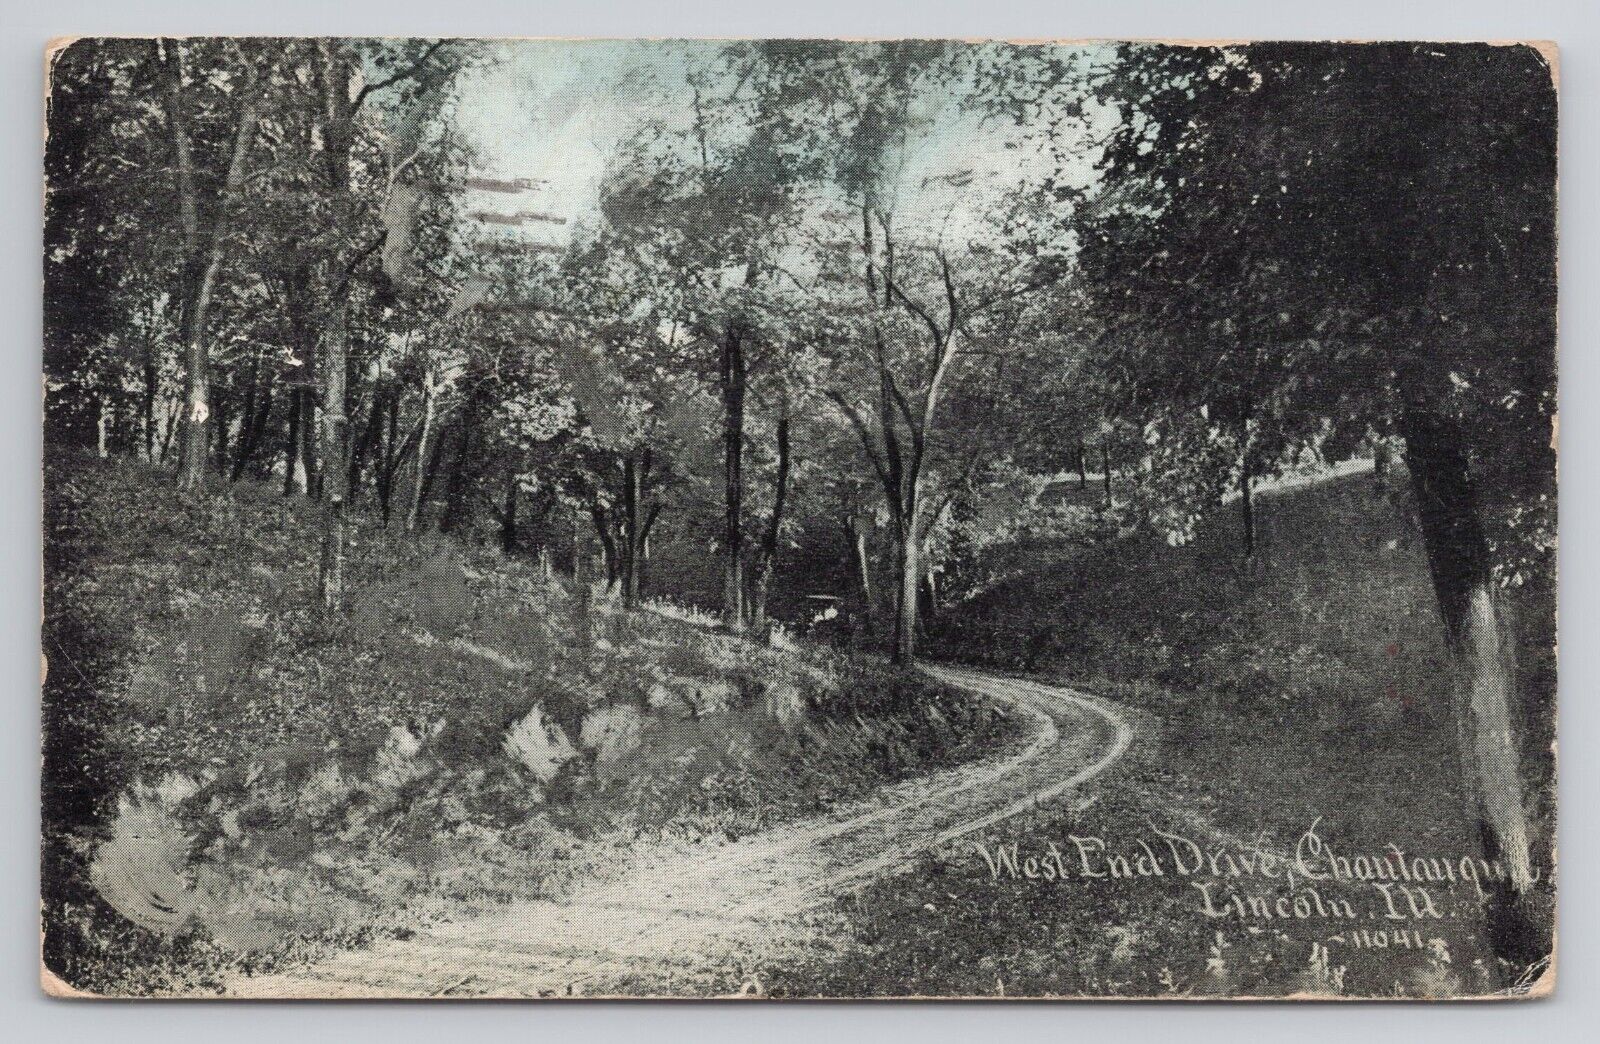 West end Drive Chautauqua Lincoln Illinois 1911 Antique Postcard